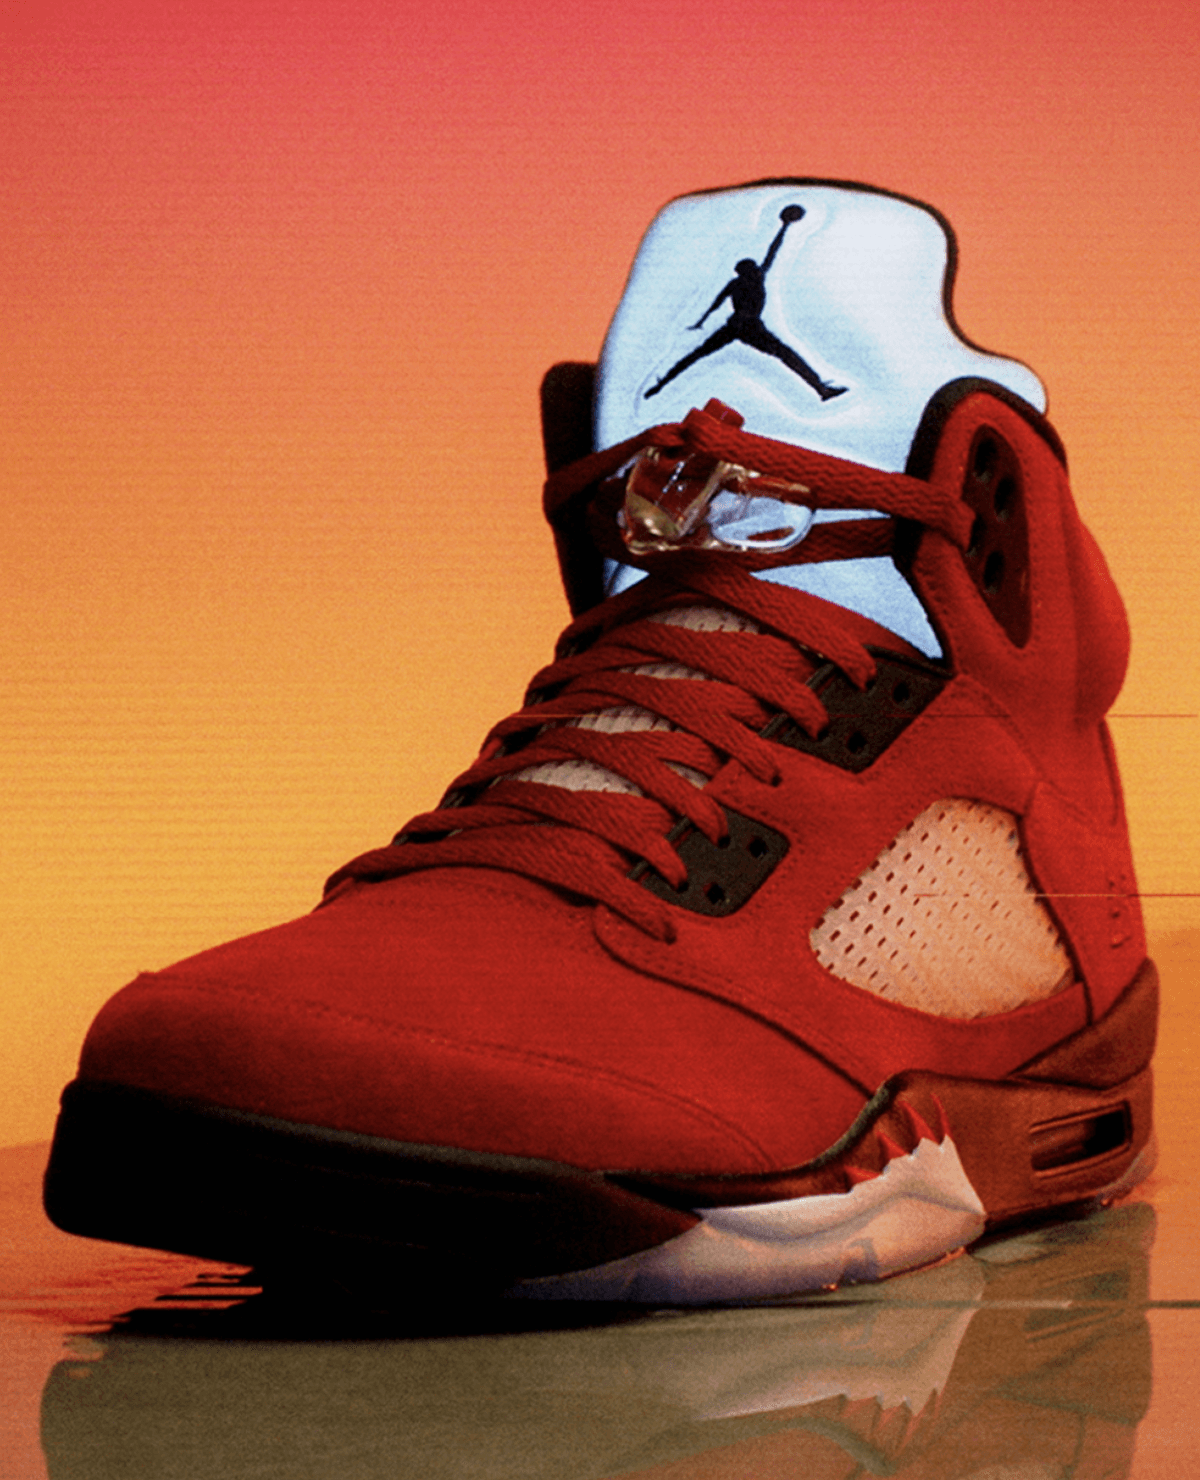 Red Jordan 5 sneaker